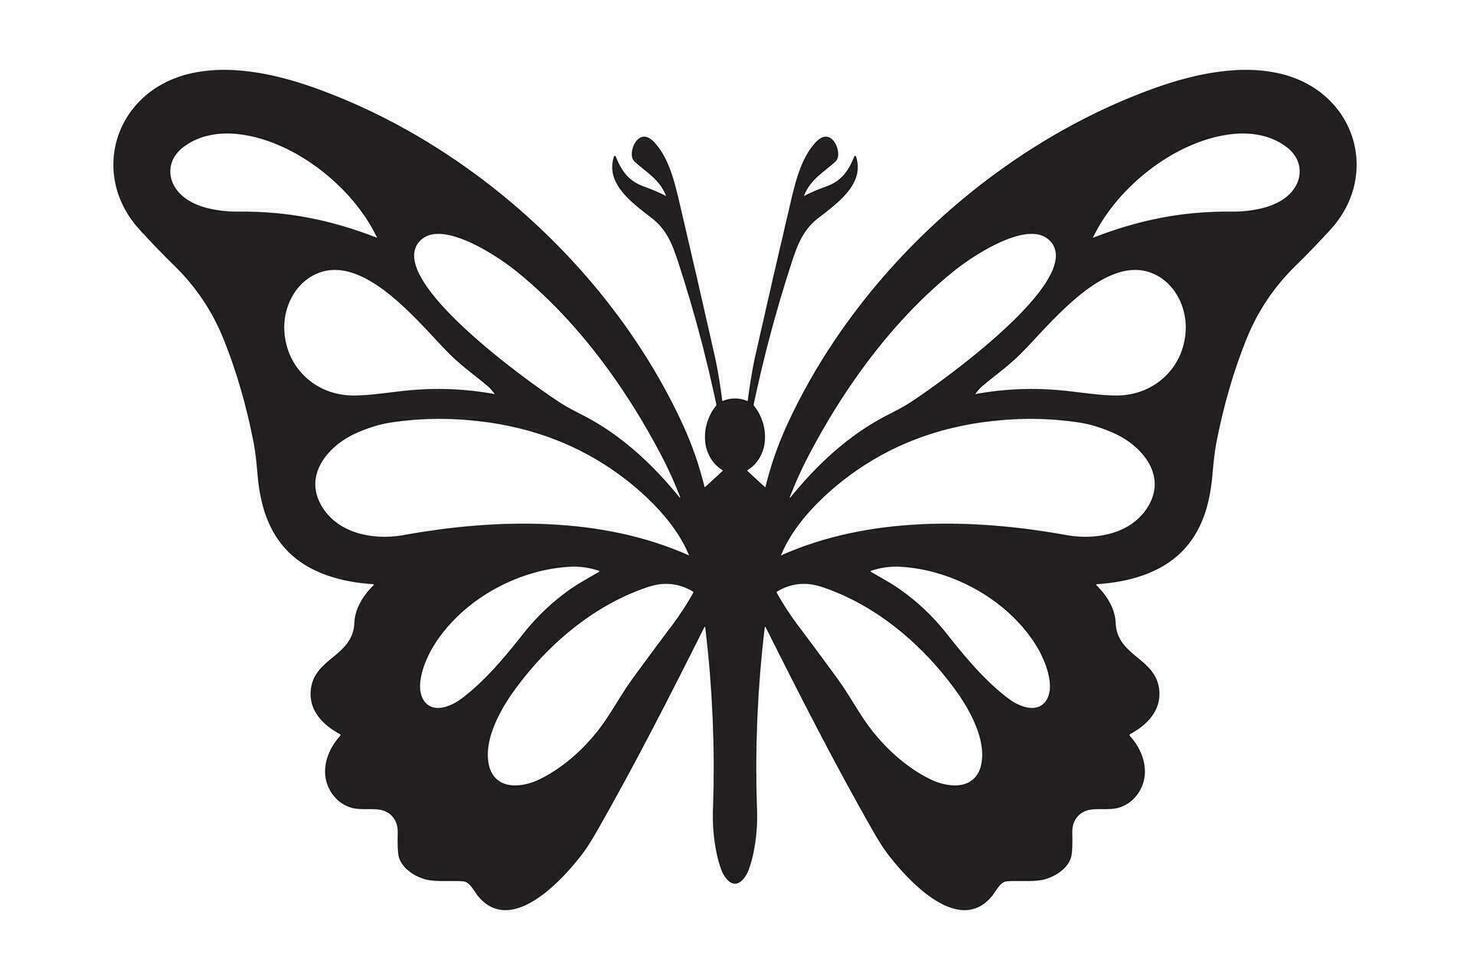 papillon tatouage silhouette conception, graphique noir icône de papillon isolé sur blanc Contexte vecteur